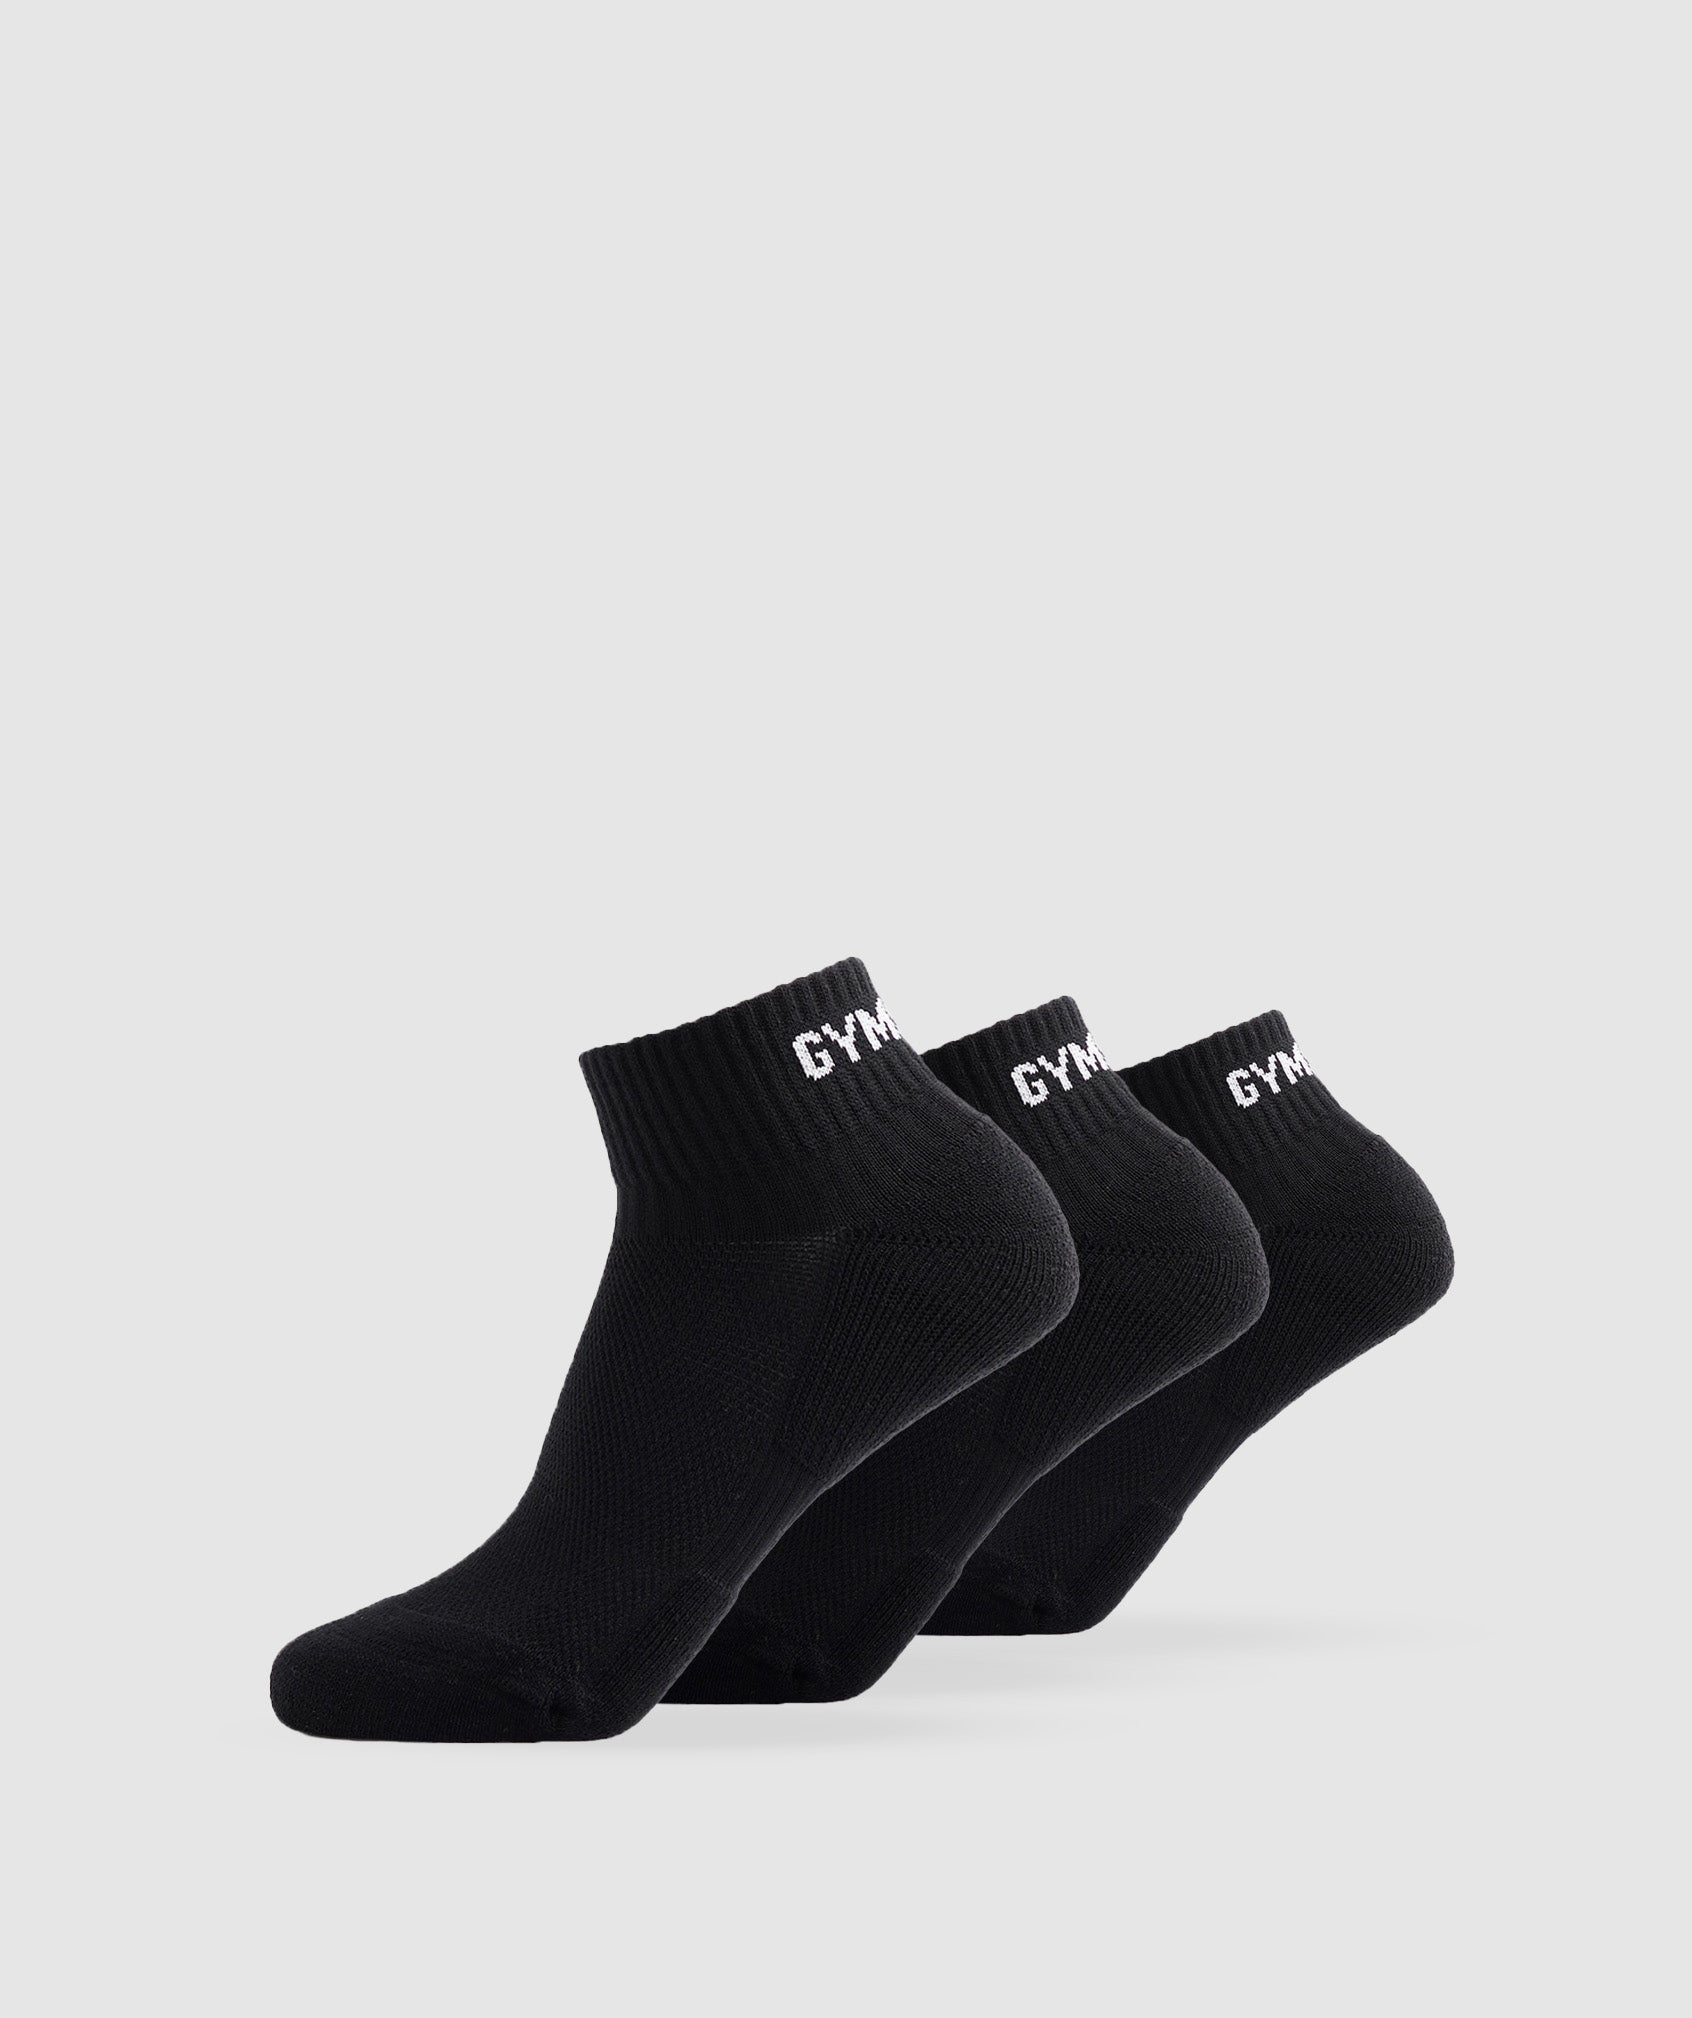 Gymshark Crew Socks 3pk - Black  Crew socks, Gymshark, Shark socks